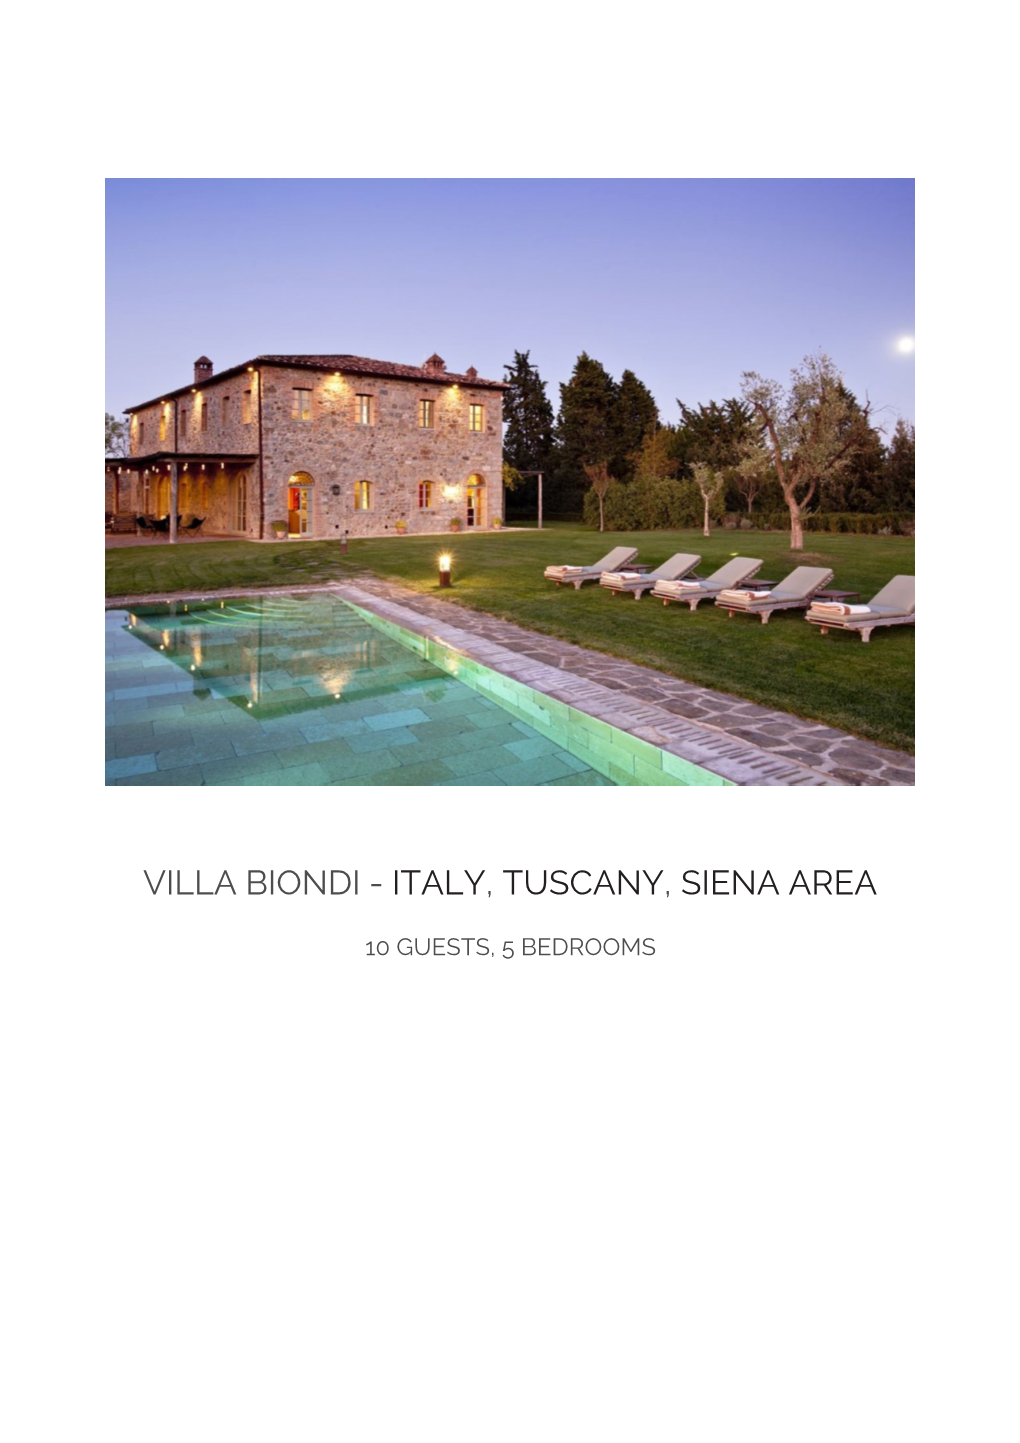 Villa Biondi - Italy, Tuscany, Siena Area